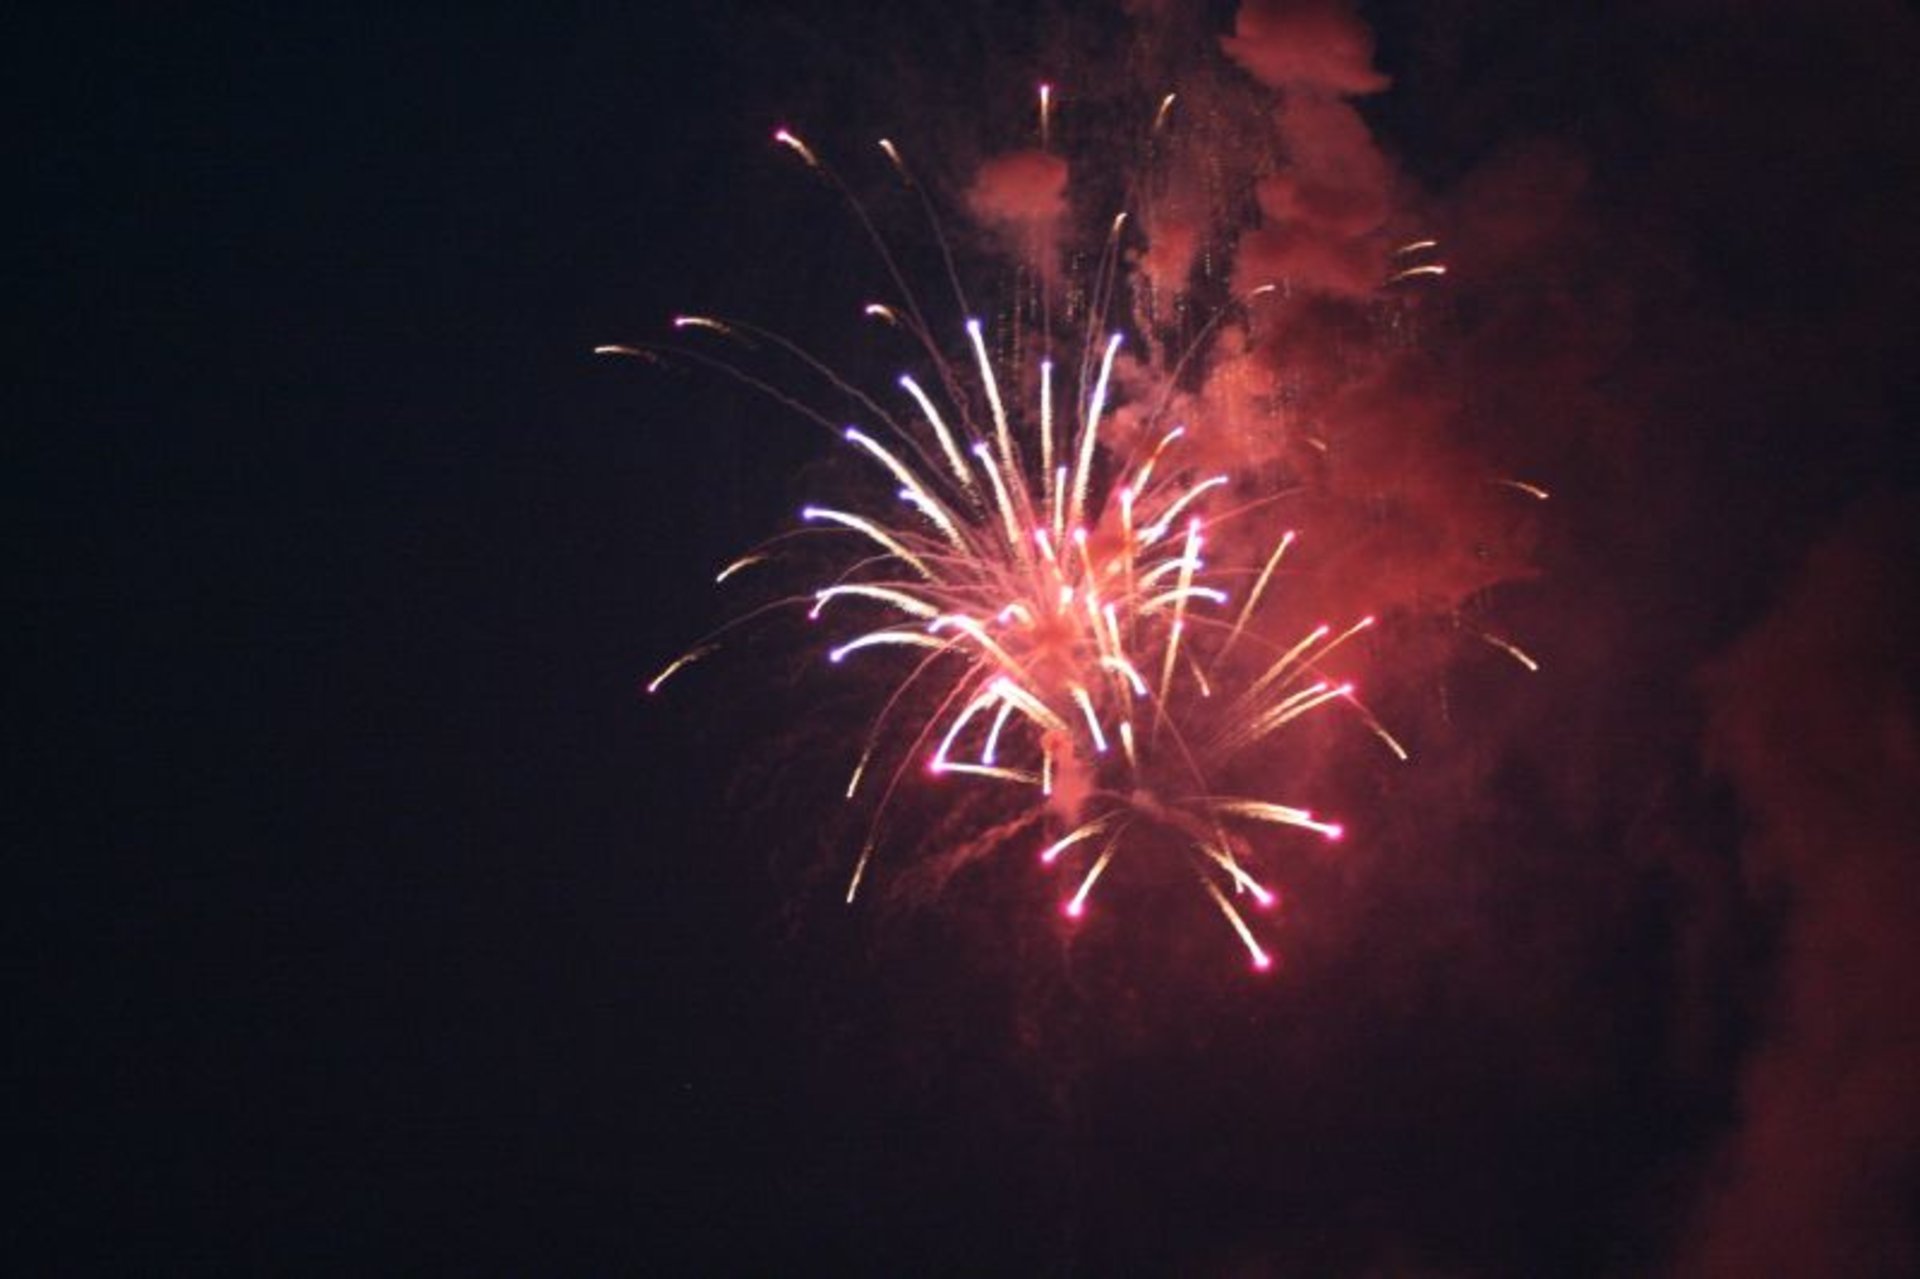 Wochenendaktivitäten & Feuerwerk am 4. Juli (Independence Day) in New Heaven